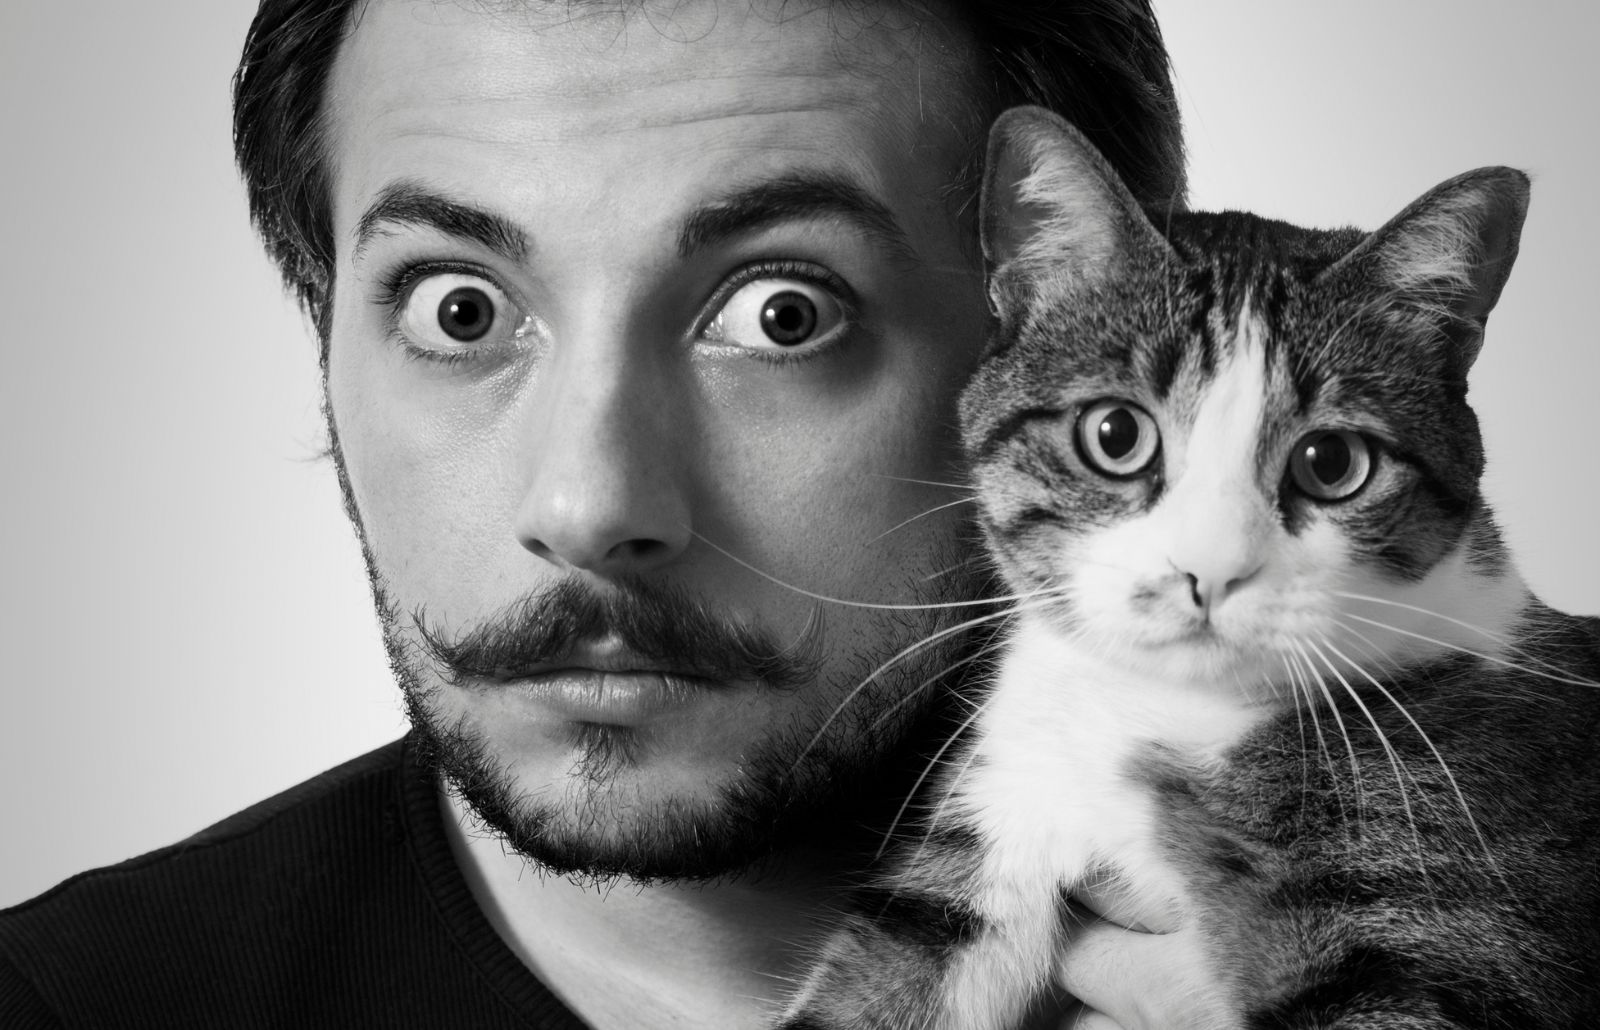 Foto in bianco e nero di Salvador Dal che tiene nelle mani un gatto vicino al suo viso.